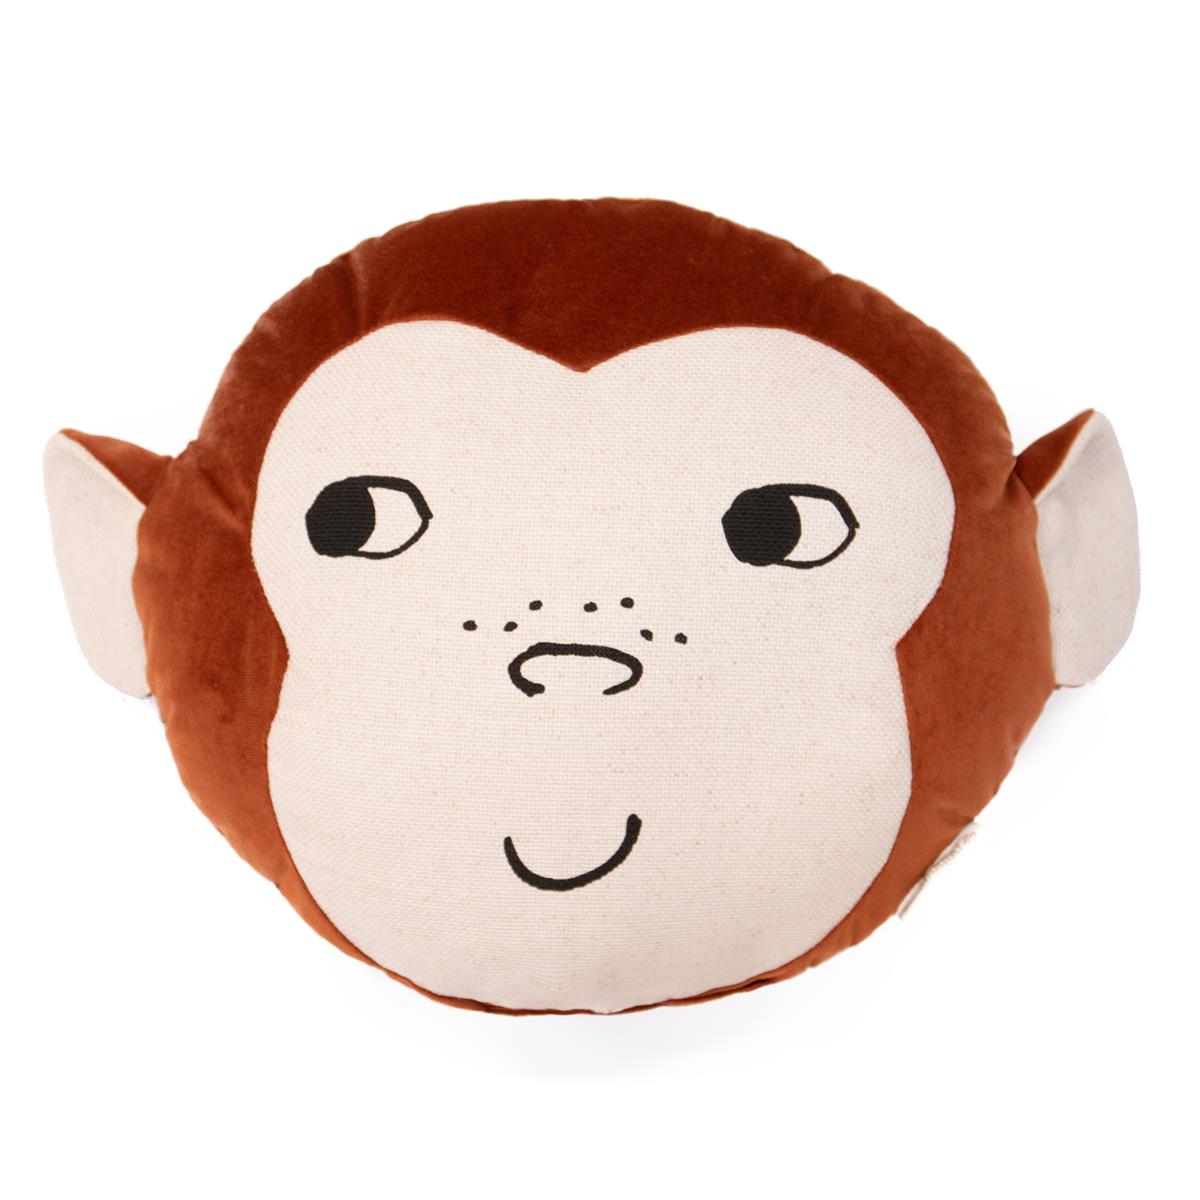 Savanna-monkey-cushion-nobodinoz-€35,95